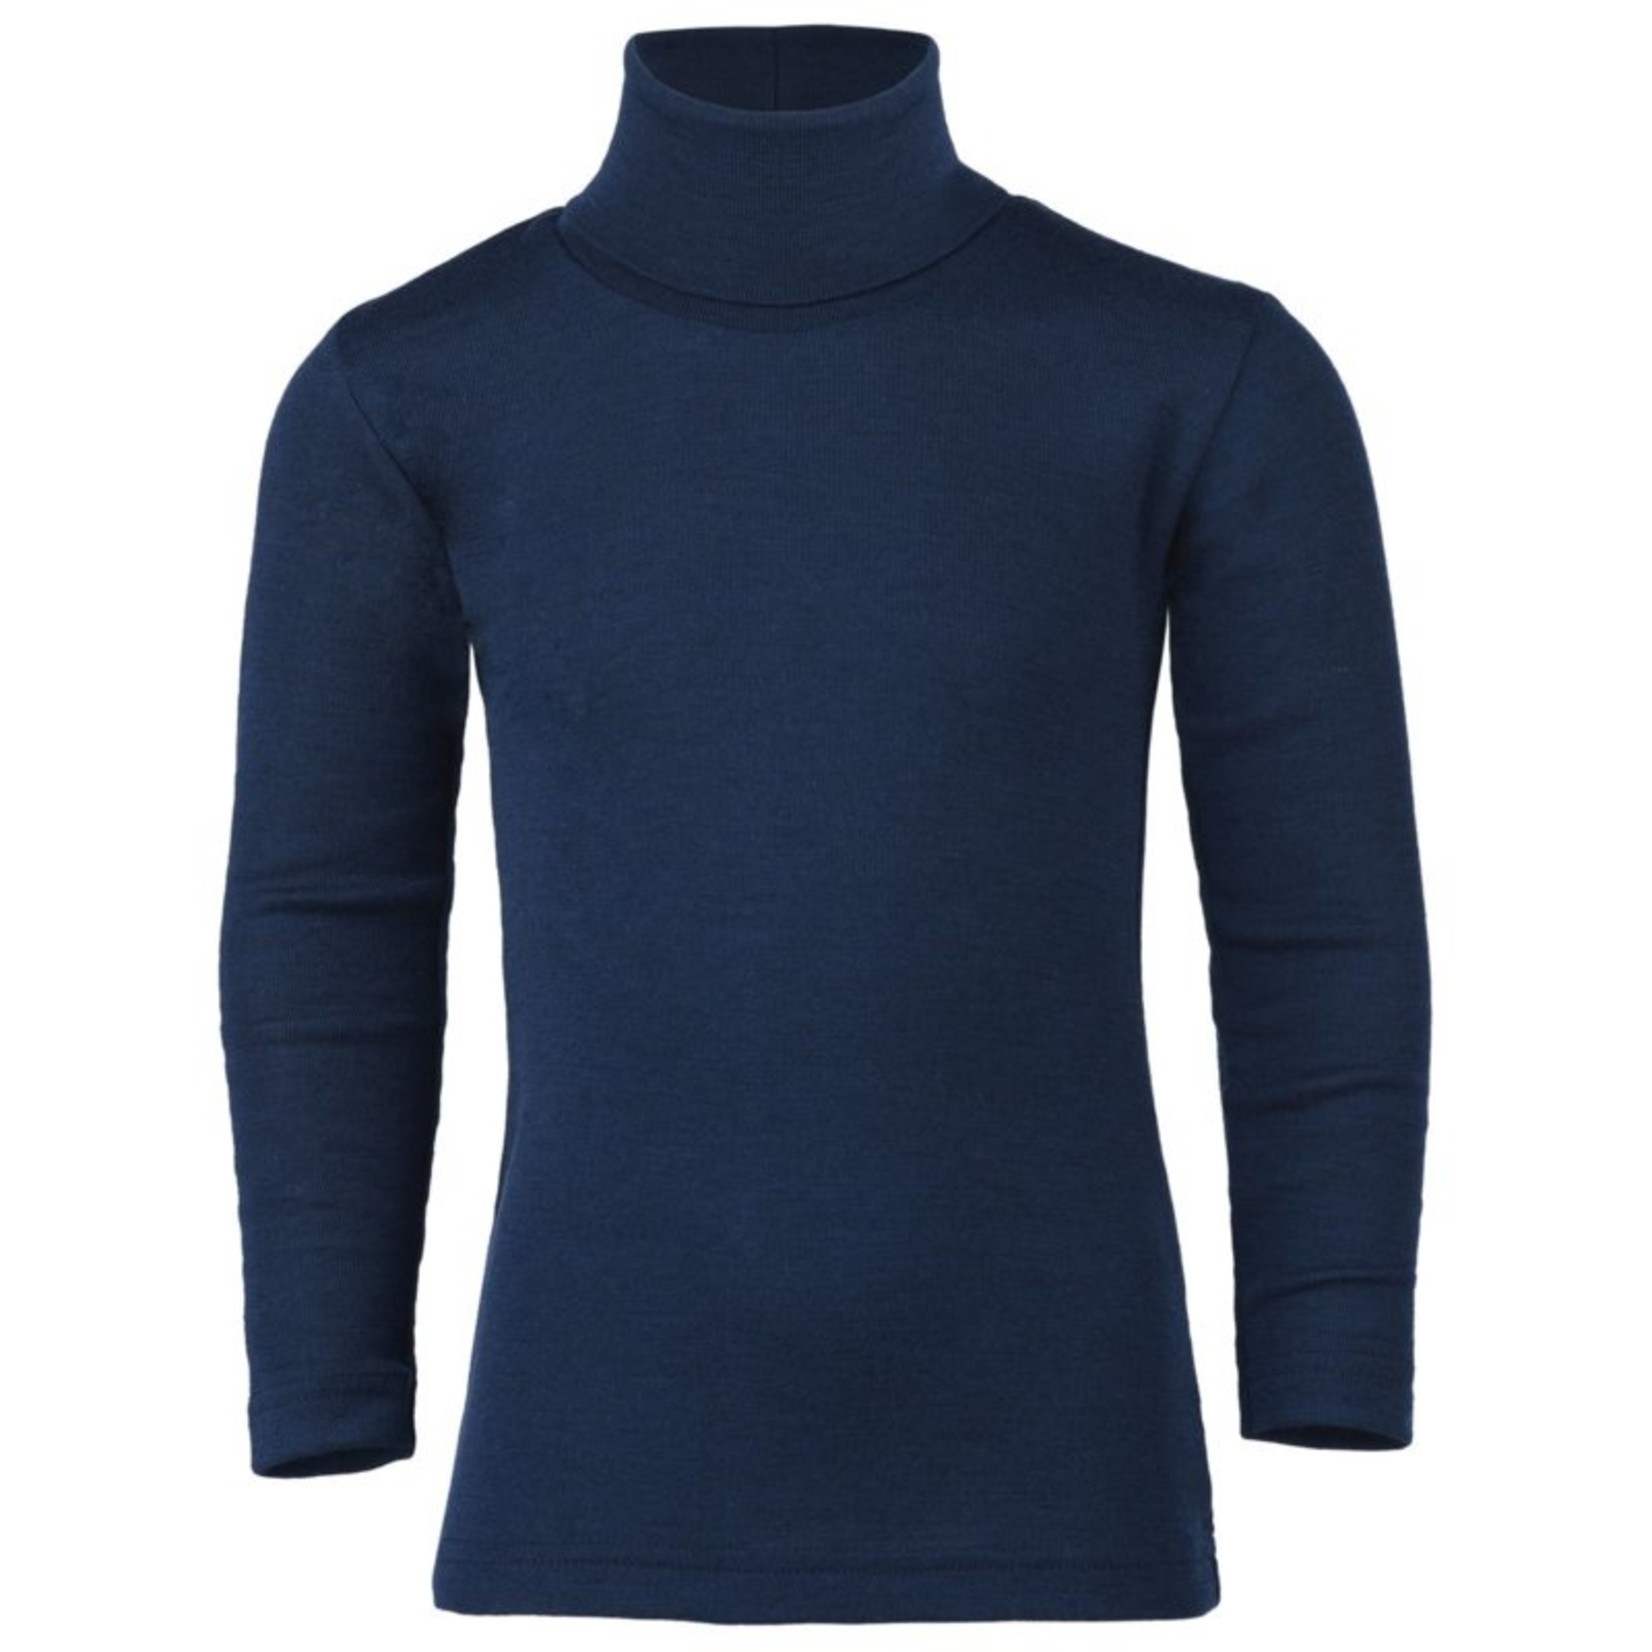 Engel Natur Wol/zijde col shirt, marineblauw